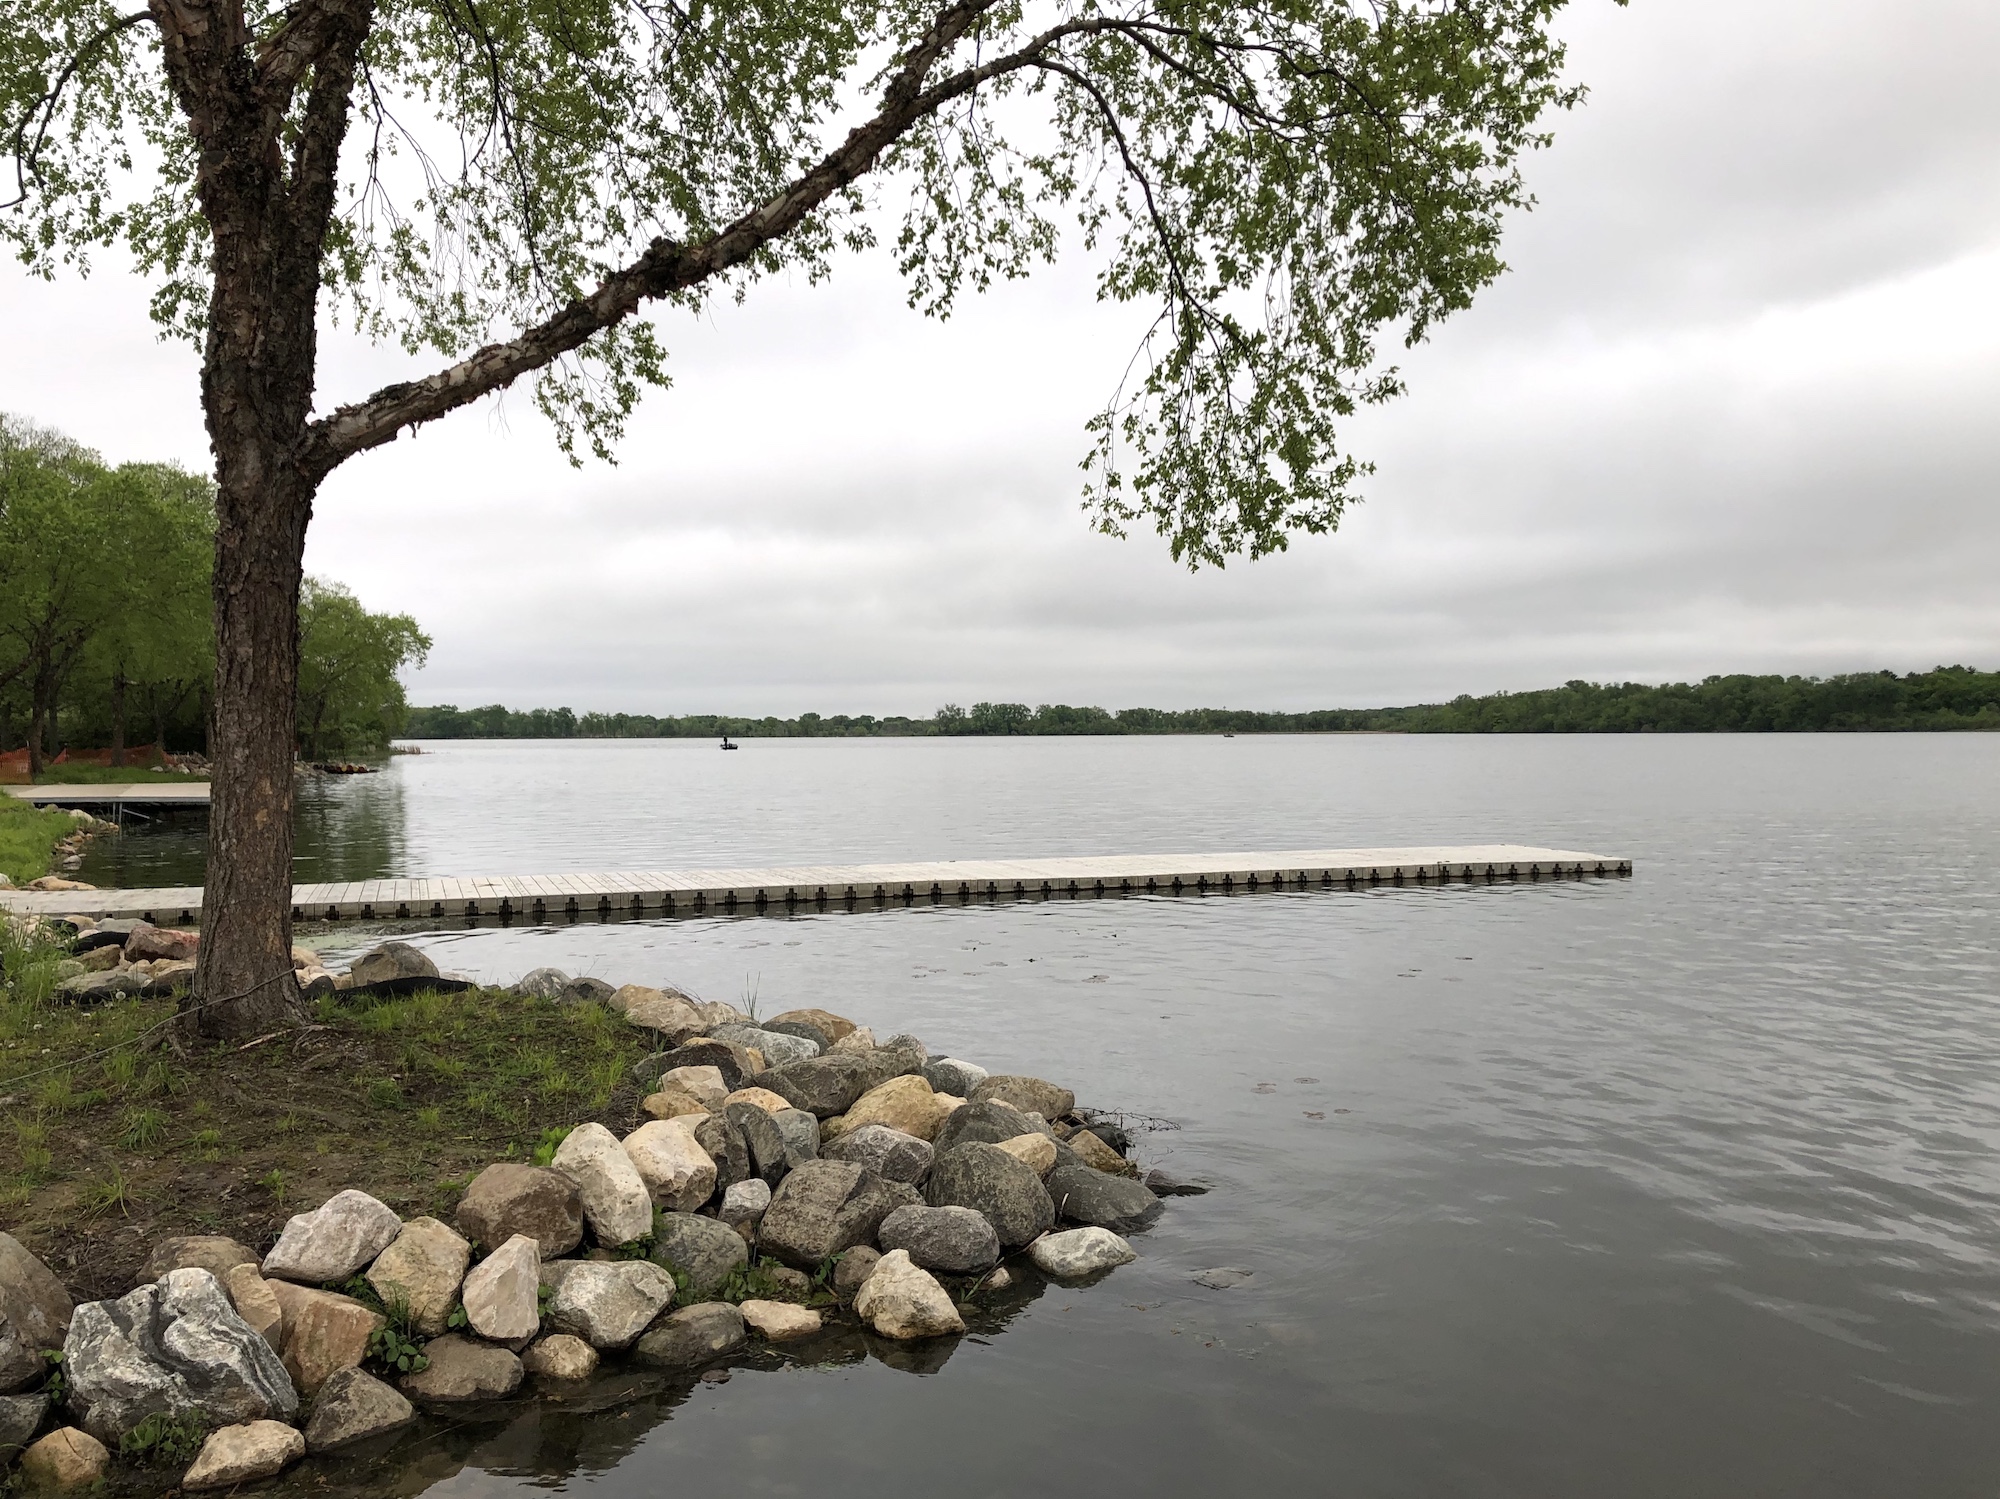 Lake Wingra on May 28, 2019.